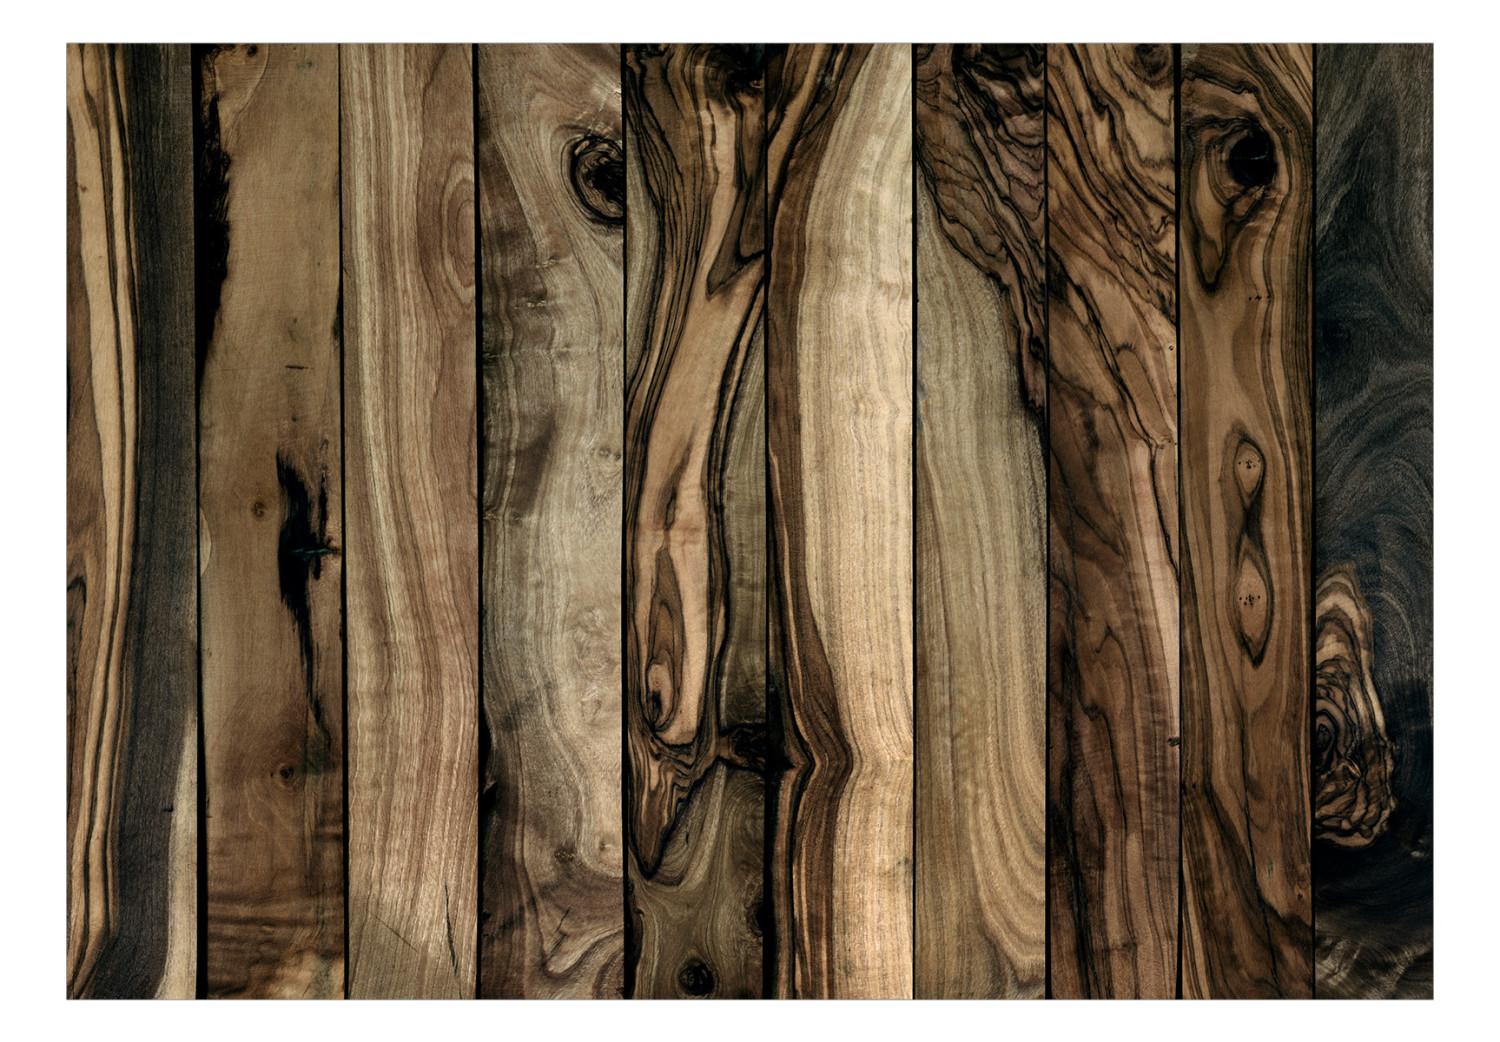 Fotomural decorativo Olivo - Fondo uniforme con diseño de tablas de madera oscura